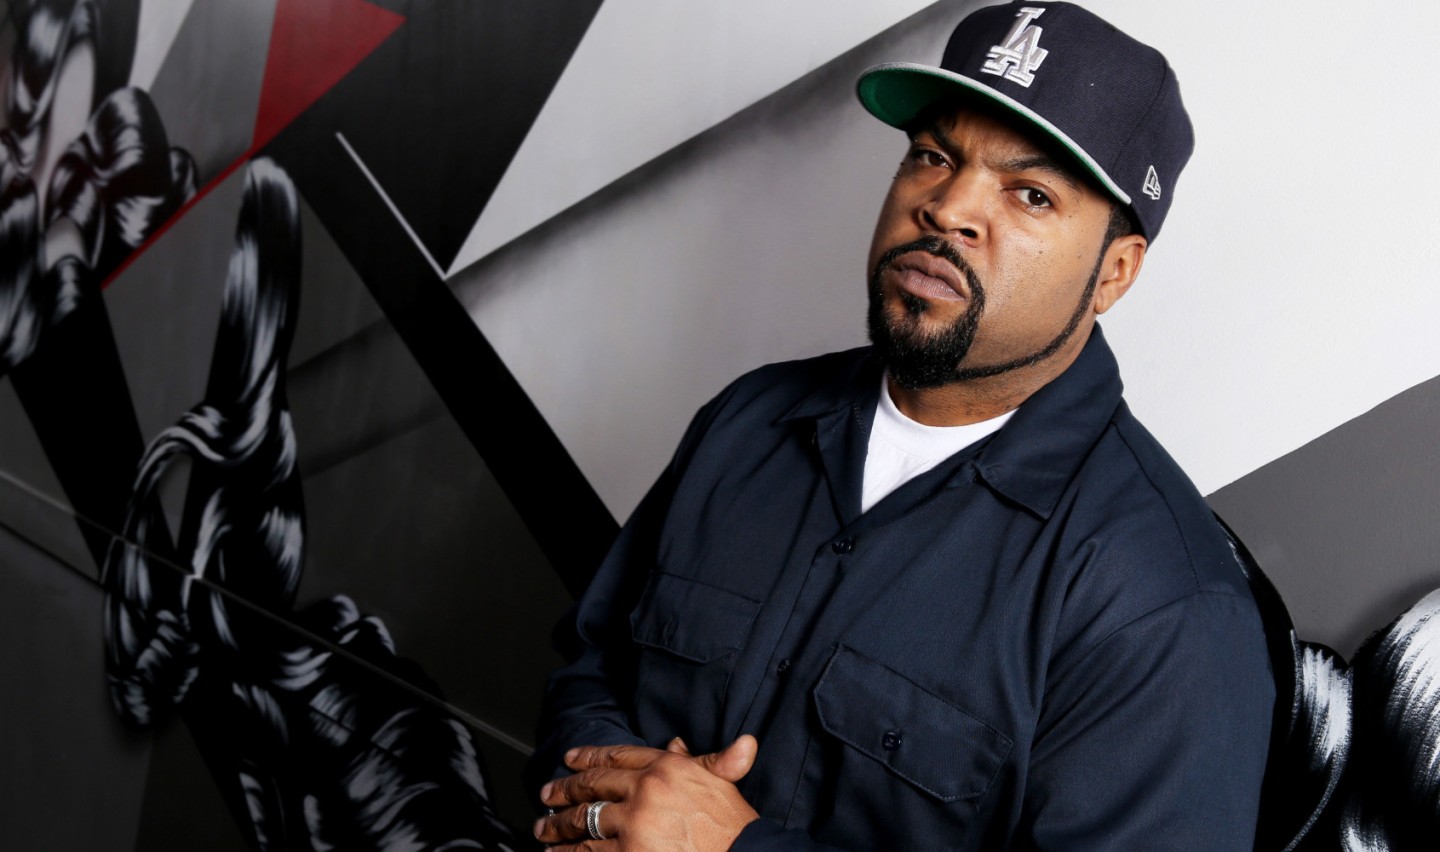 Ice Cube. Ice Cube рэпер. Американские реперы список с фото черные. Cube feat